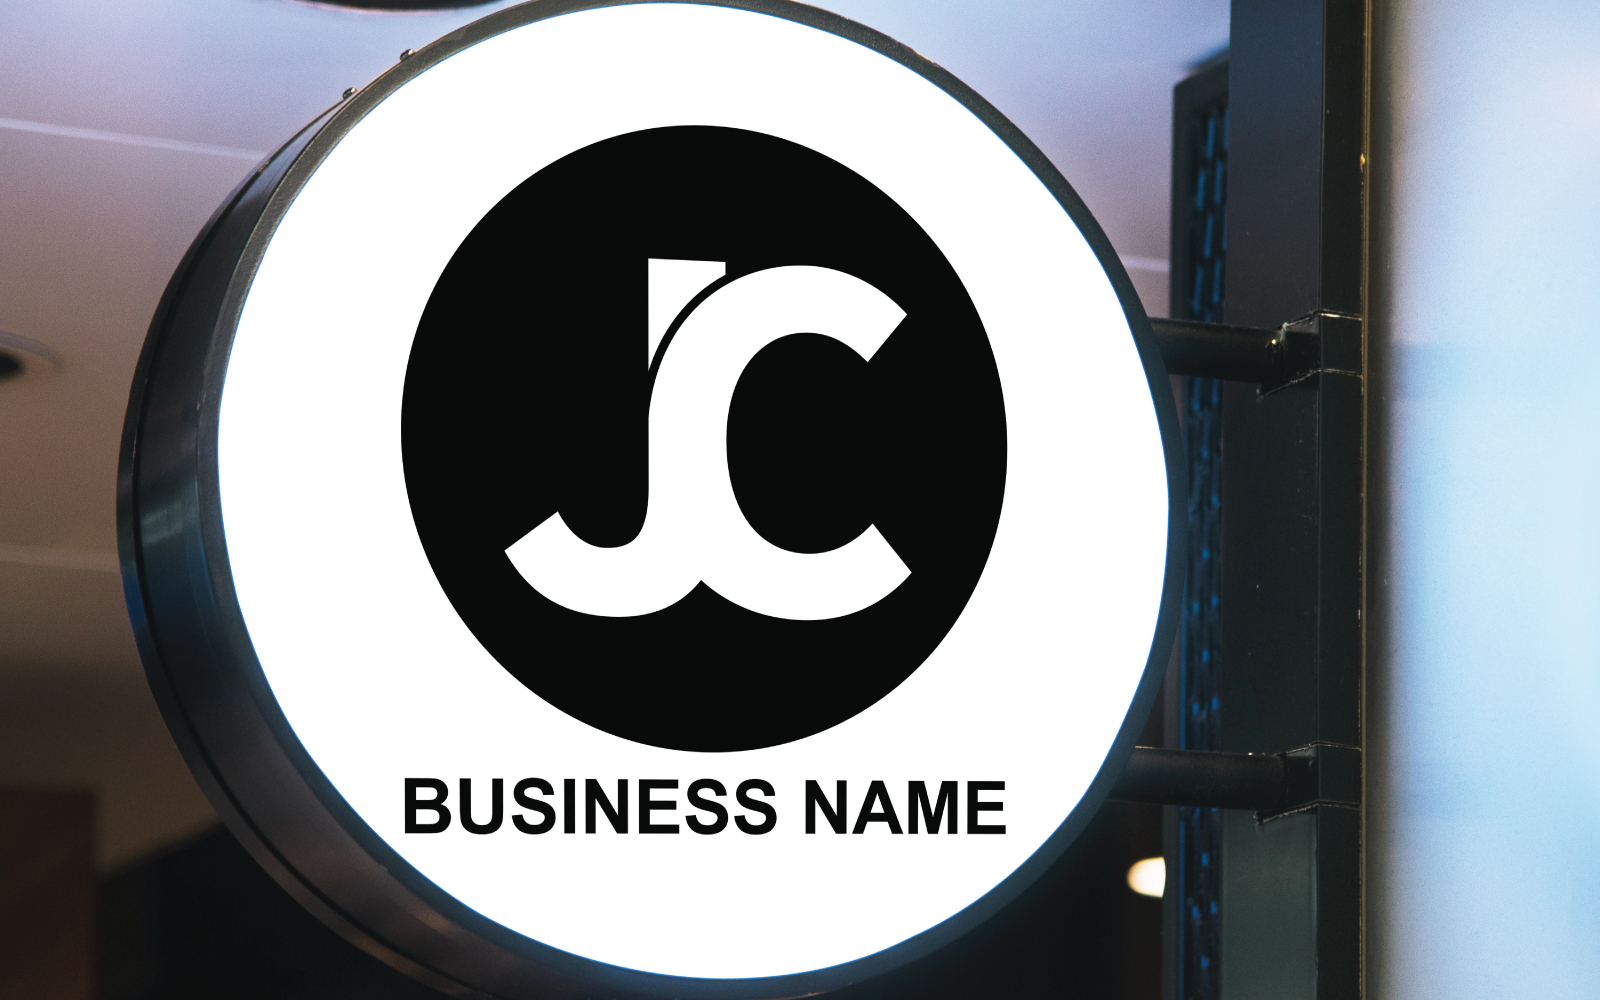 Unique JC Letter Logo Template Design